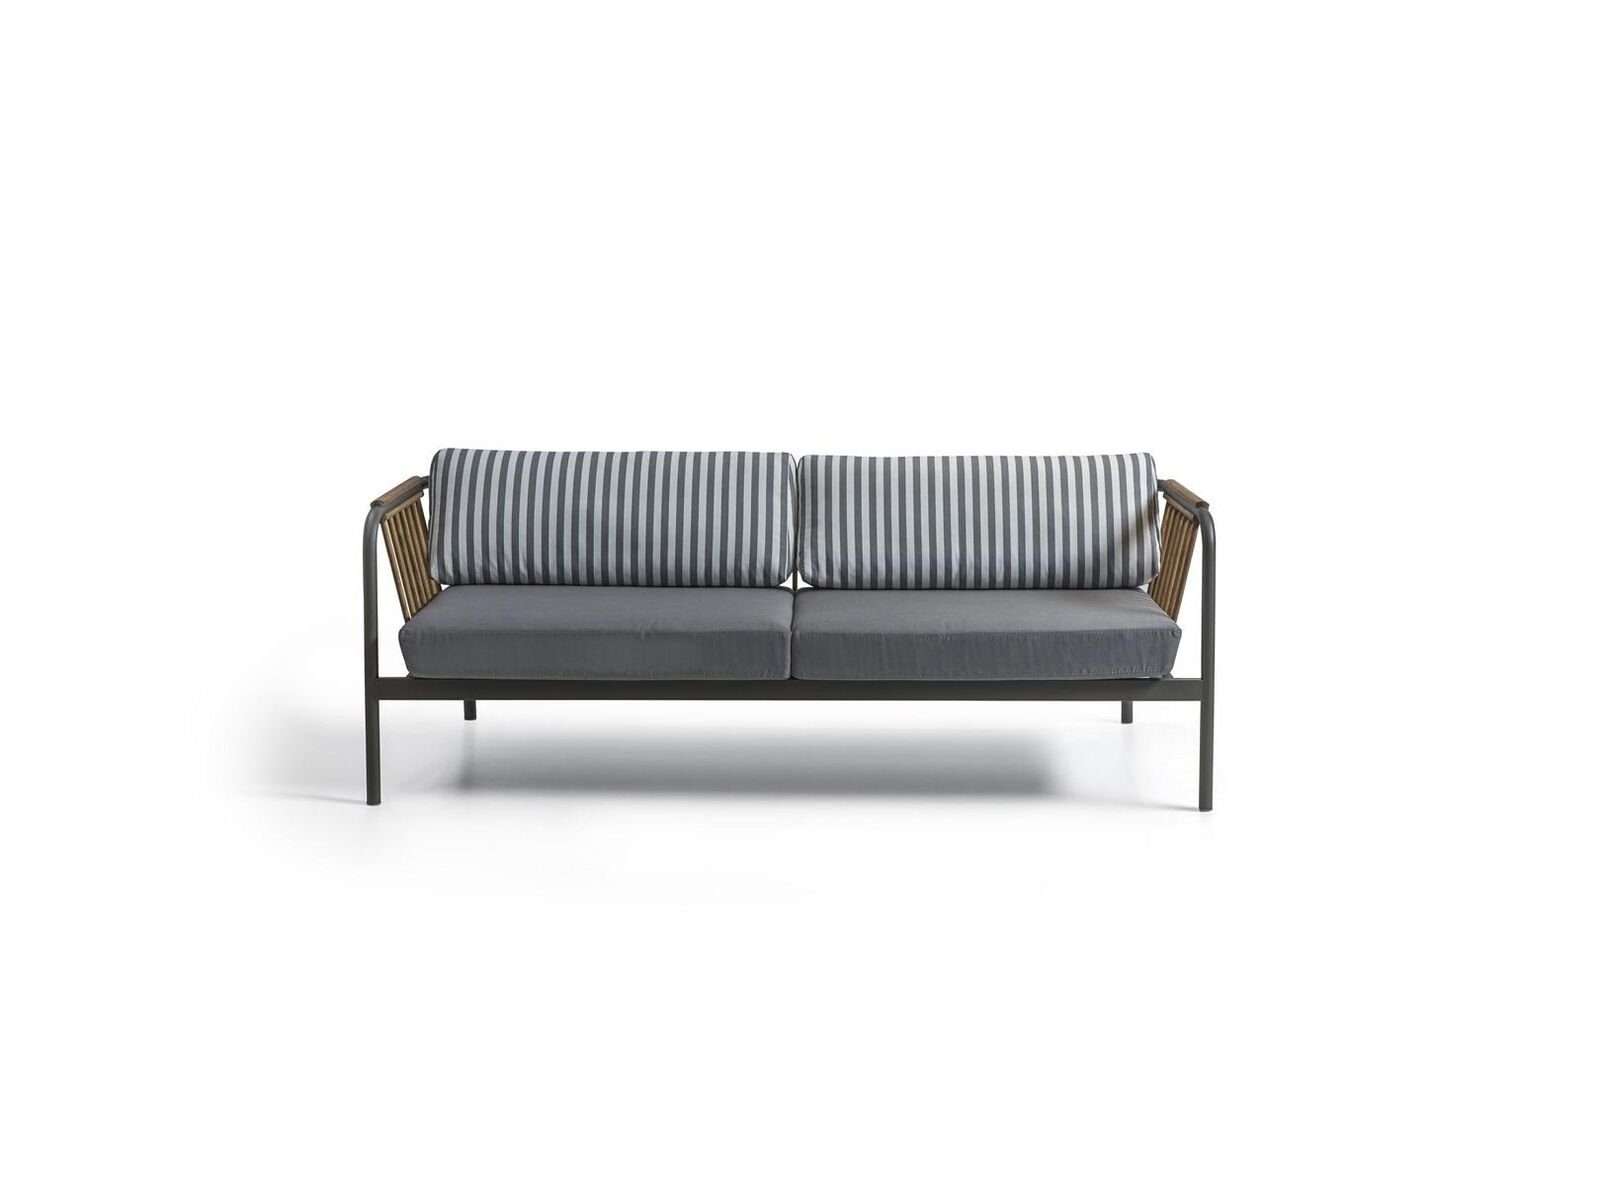 JVmoebel Europa Sofa Dreisitzer Luxus Design Polster Moderne Couch Möbel in Sofa Polstermöbel, Made